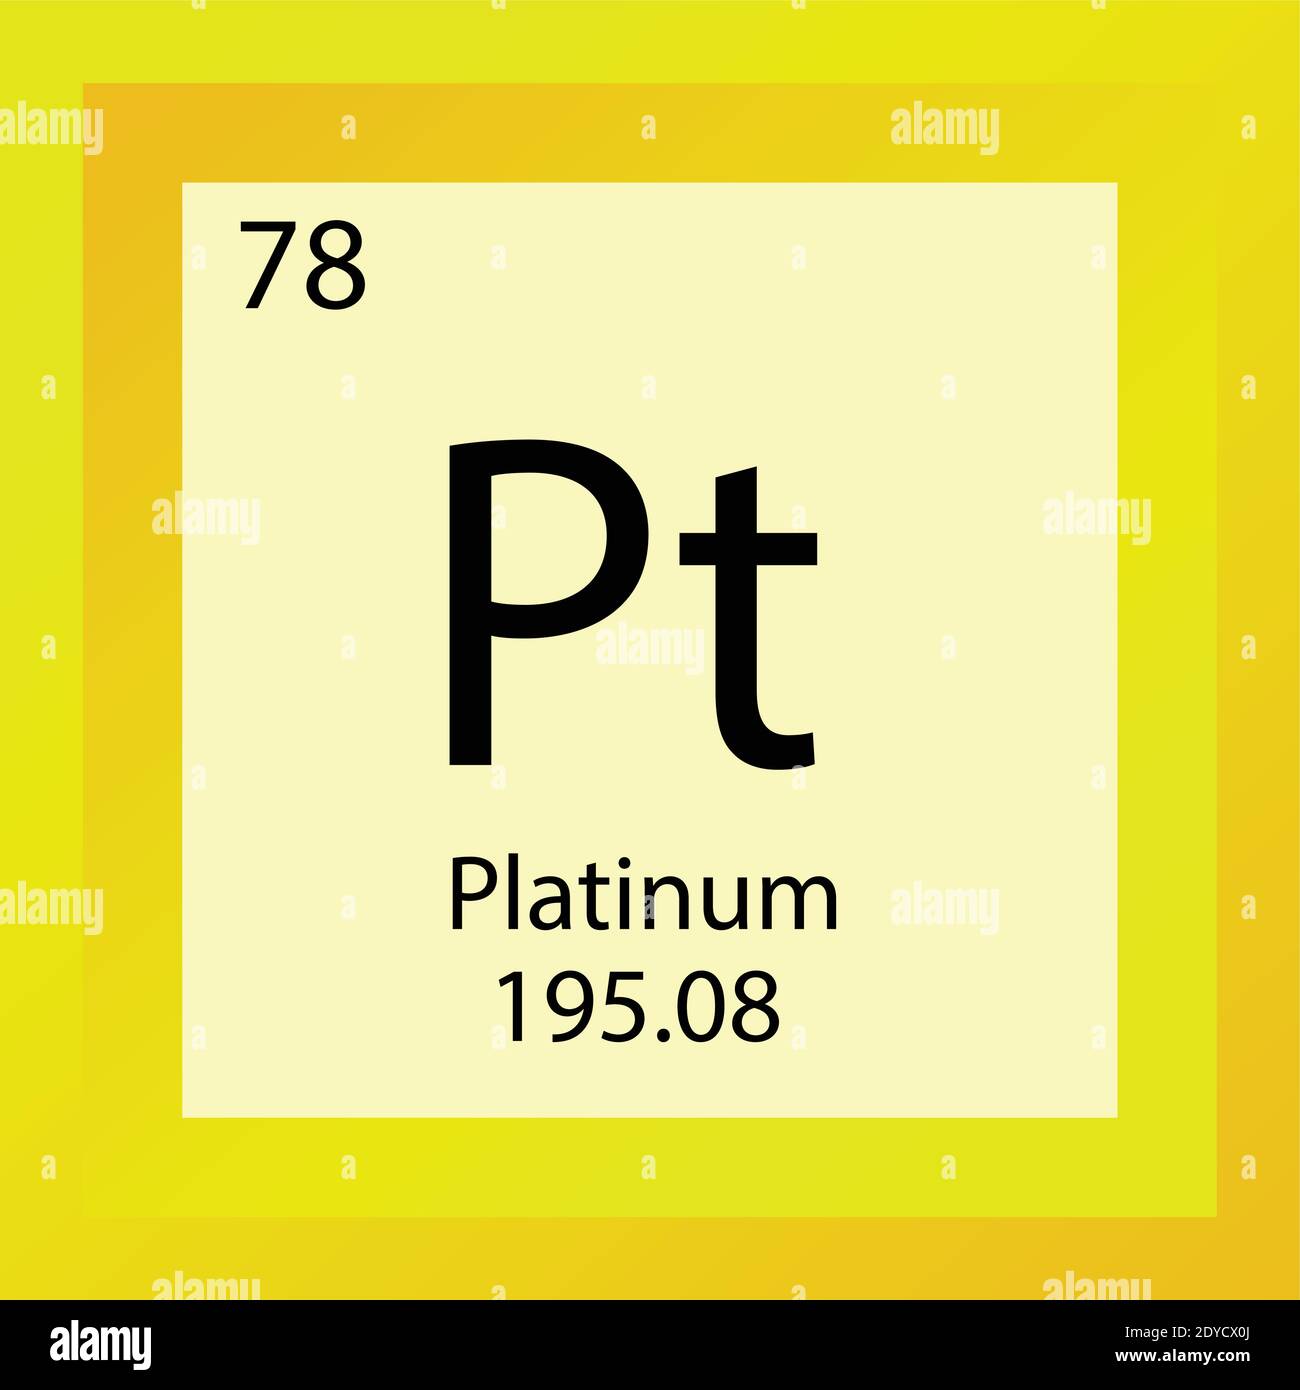 Platinum Chemical Element Stockfotos und -bilder Kaufen - Alamy